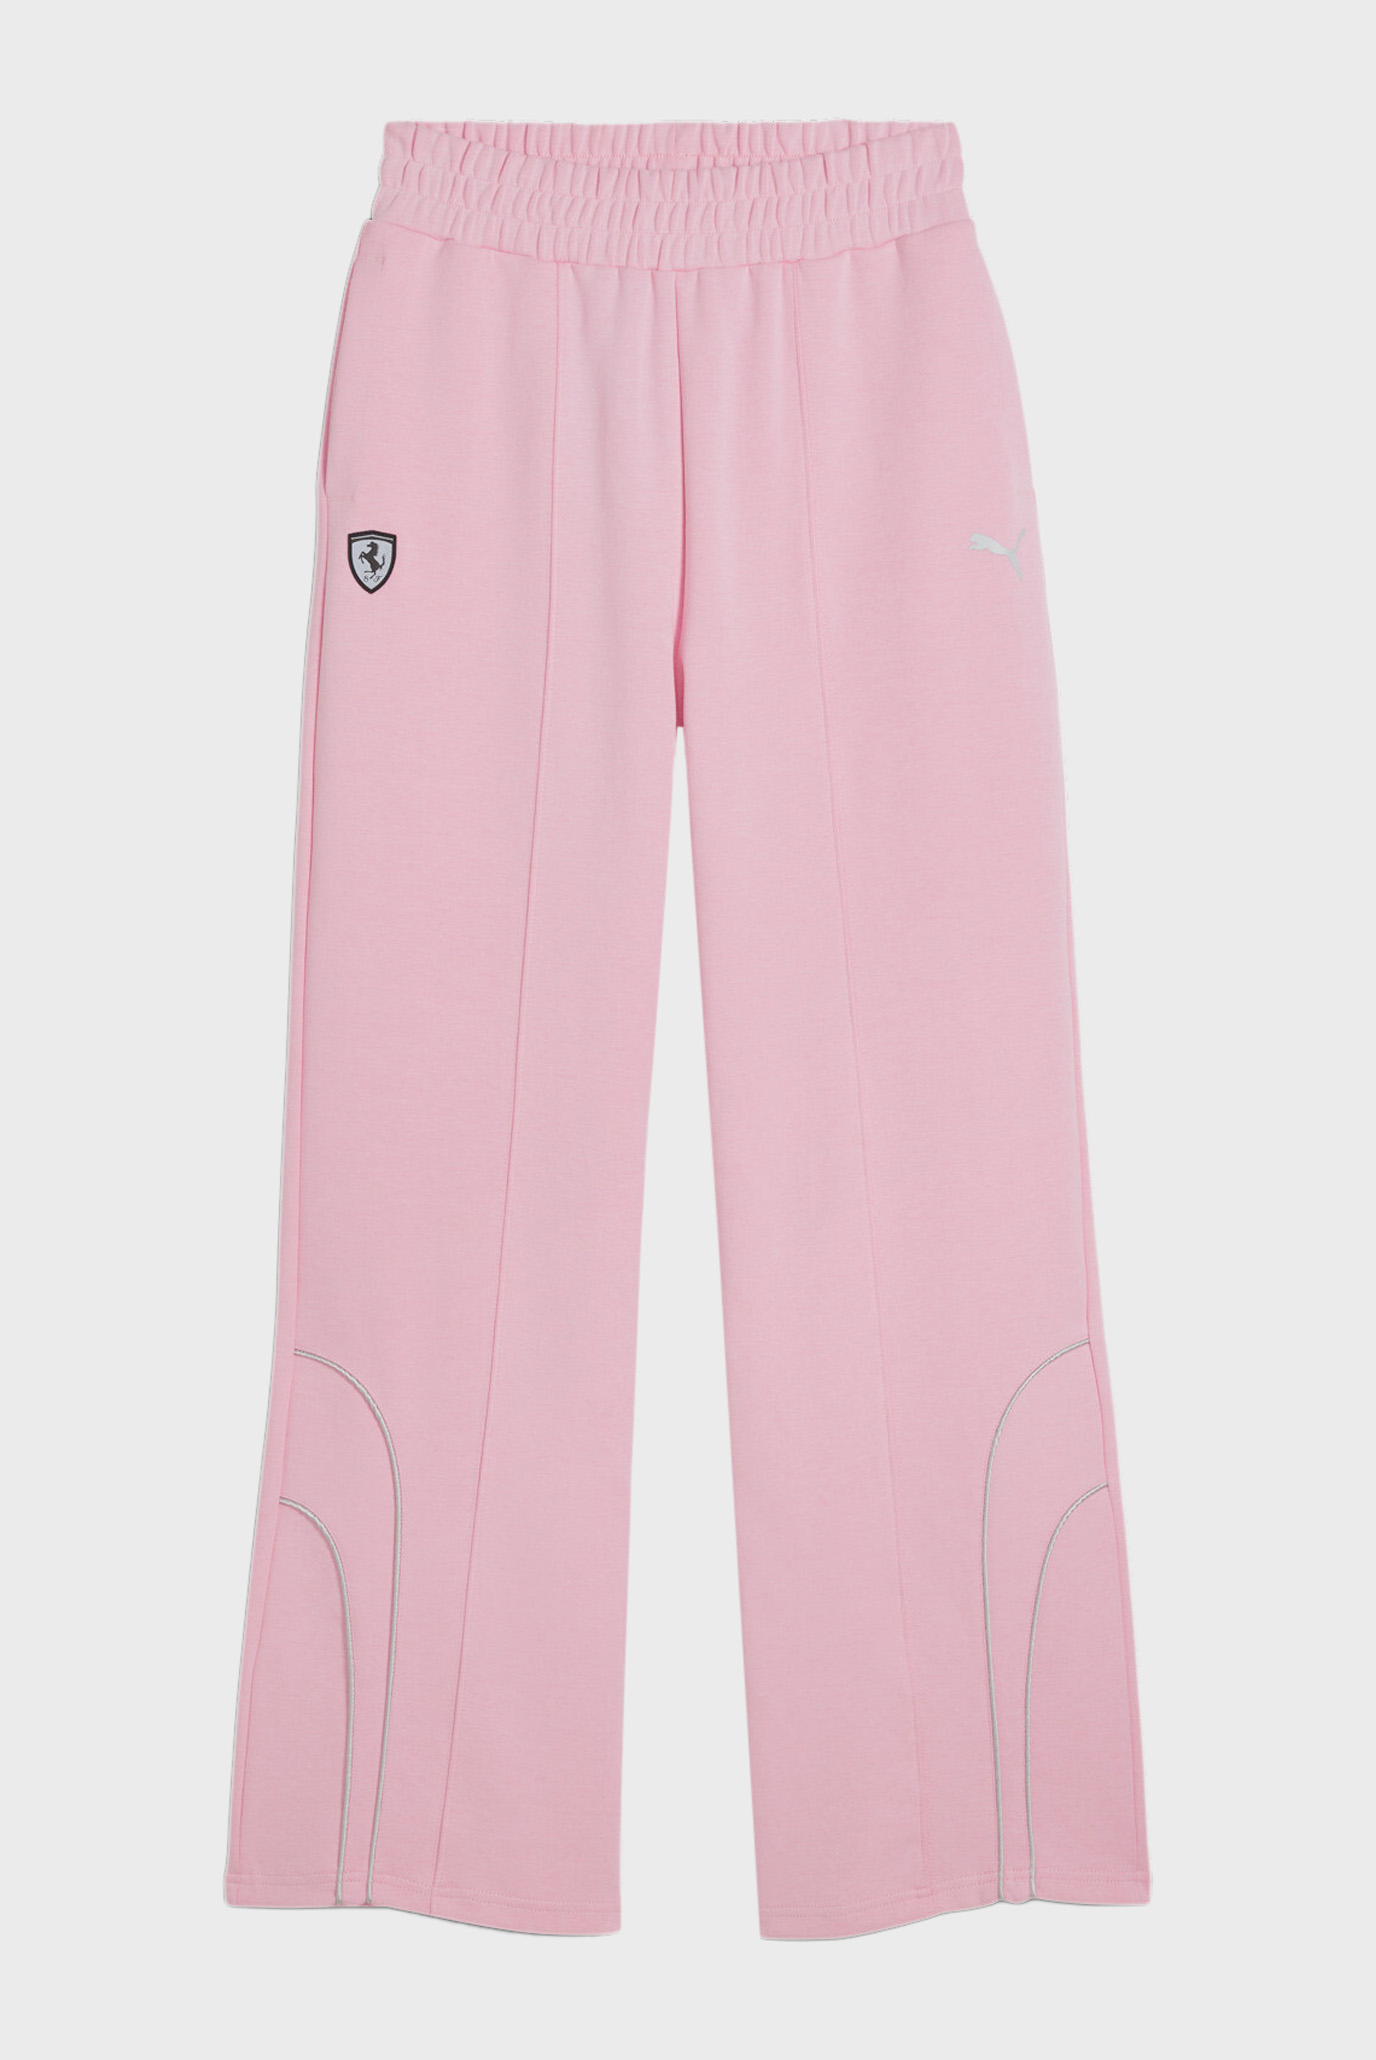 Женские розовые спортивные брюки Scuderia Ferrari Style Women's Motorsport Pants 1